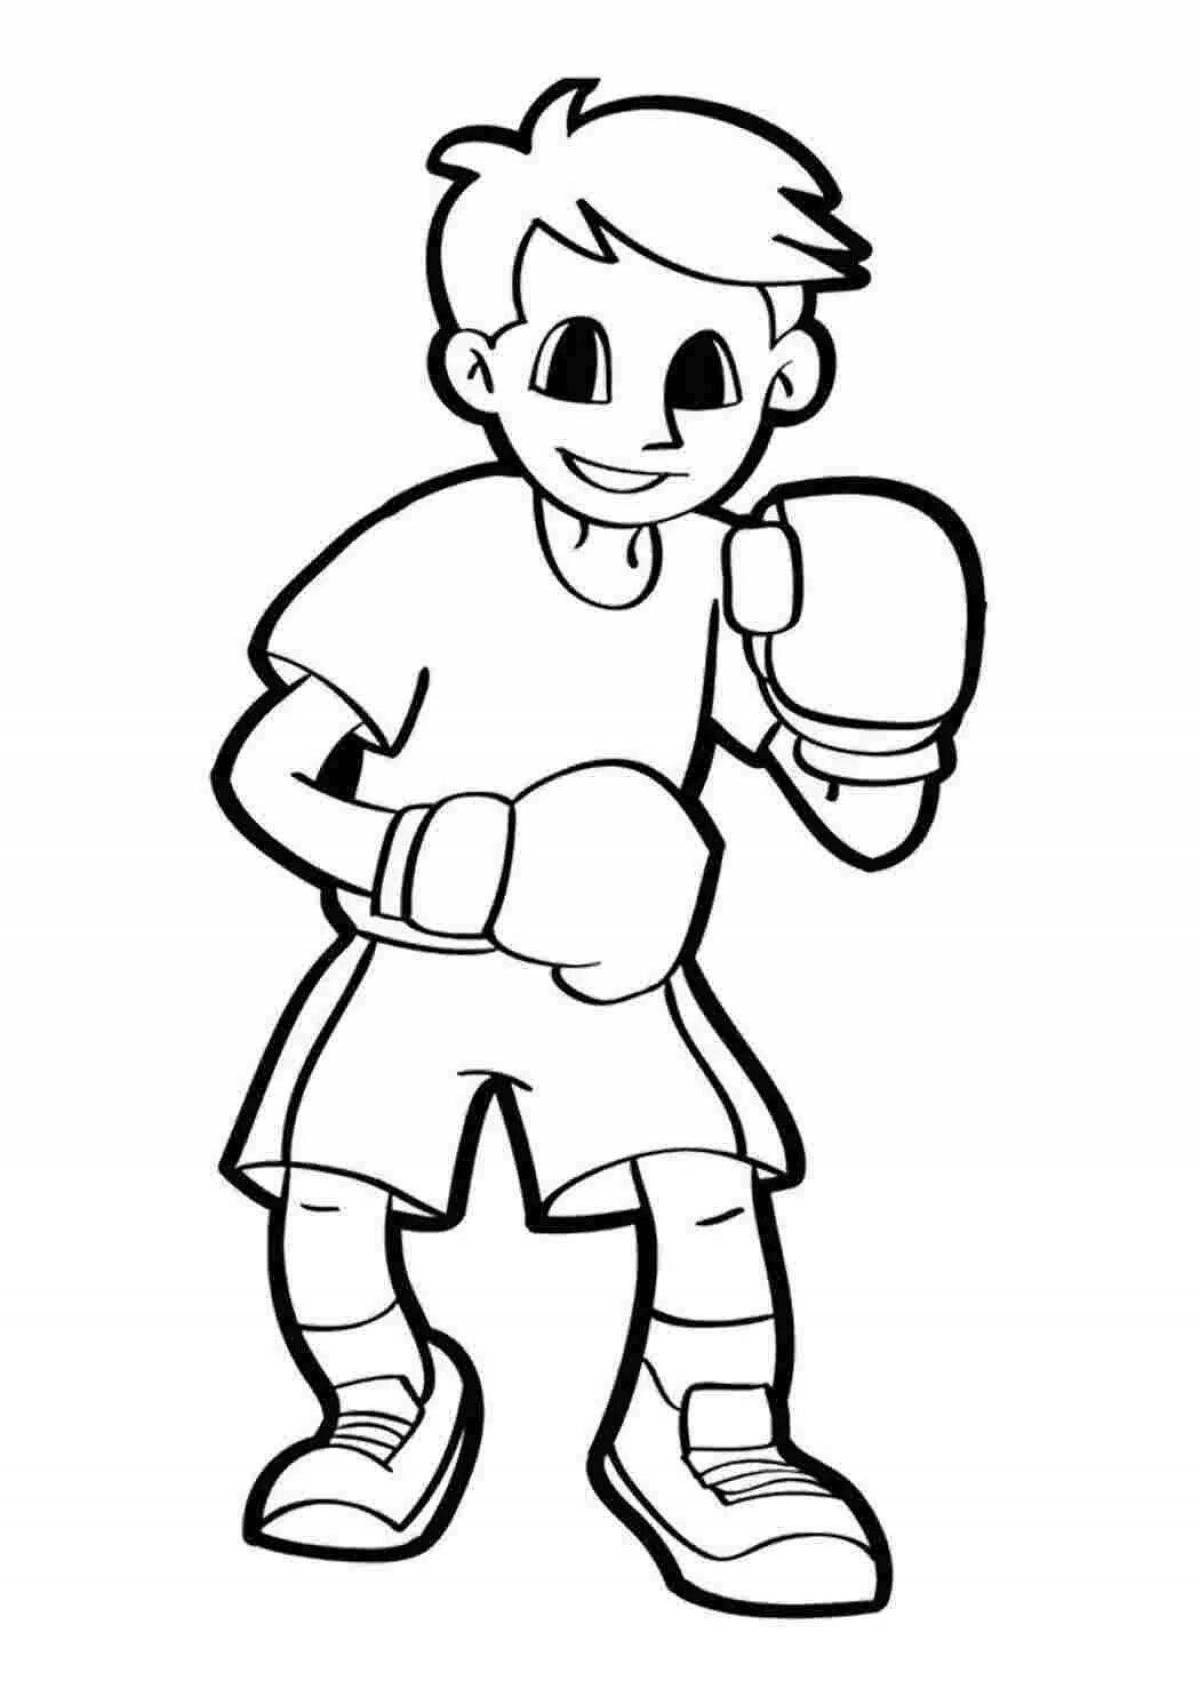 Привлекательная раскраска бокса для детей